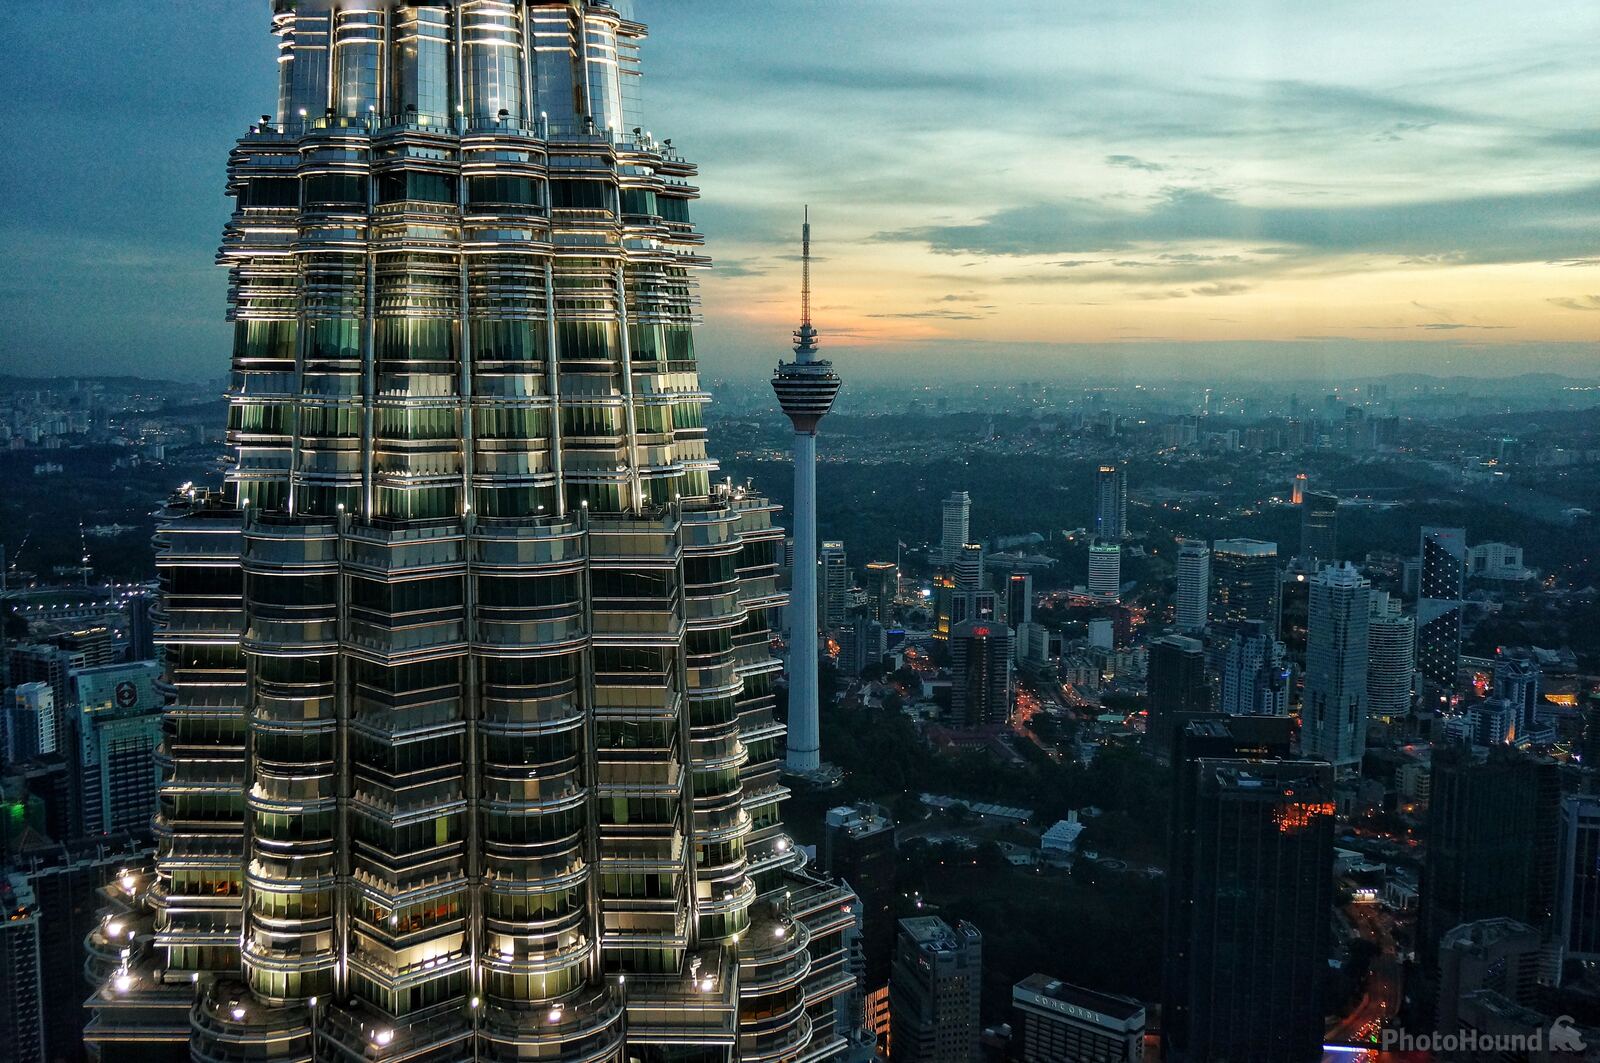 Image of Petronas Towers by Team PhotoHound